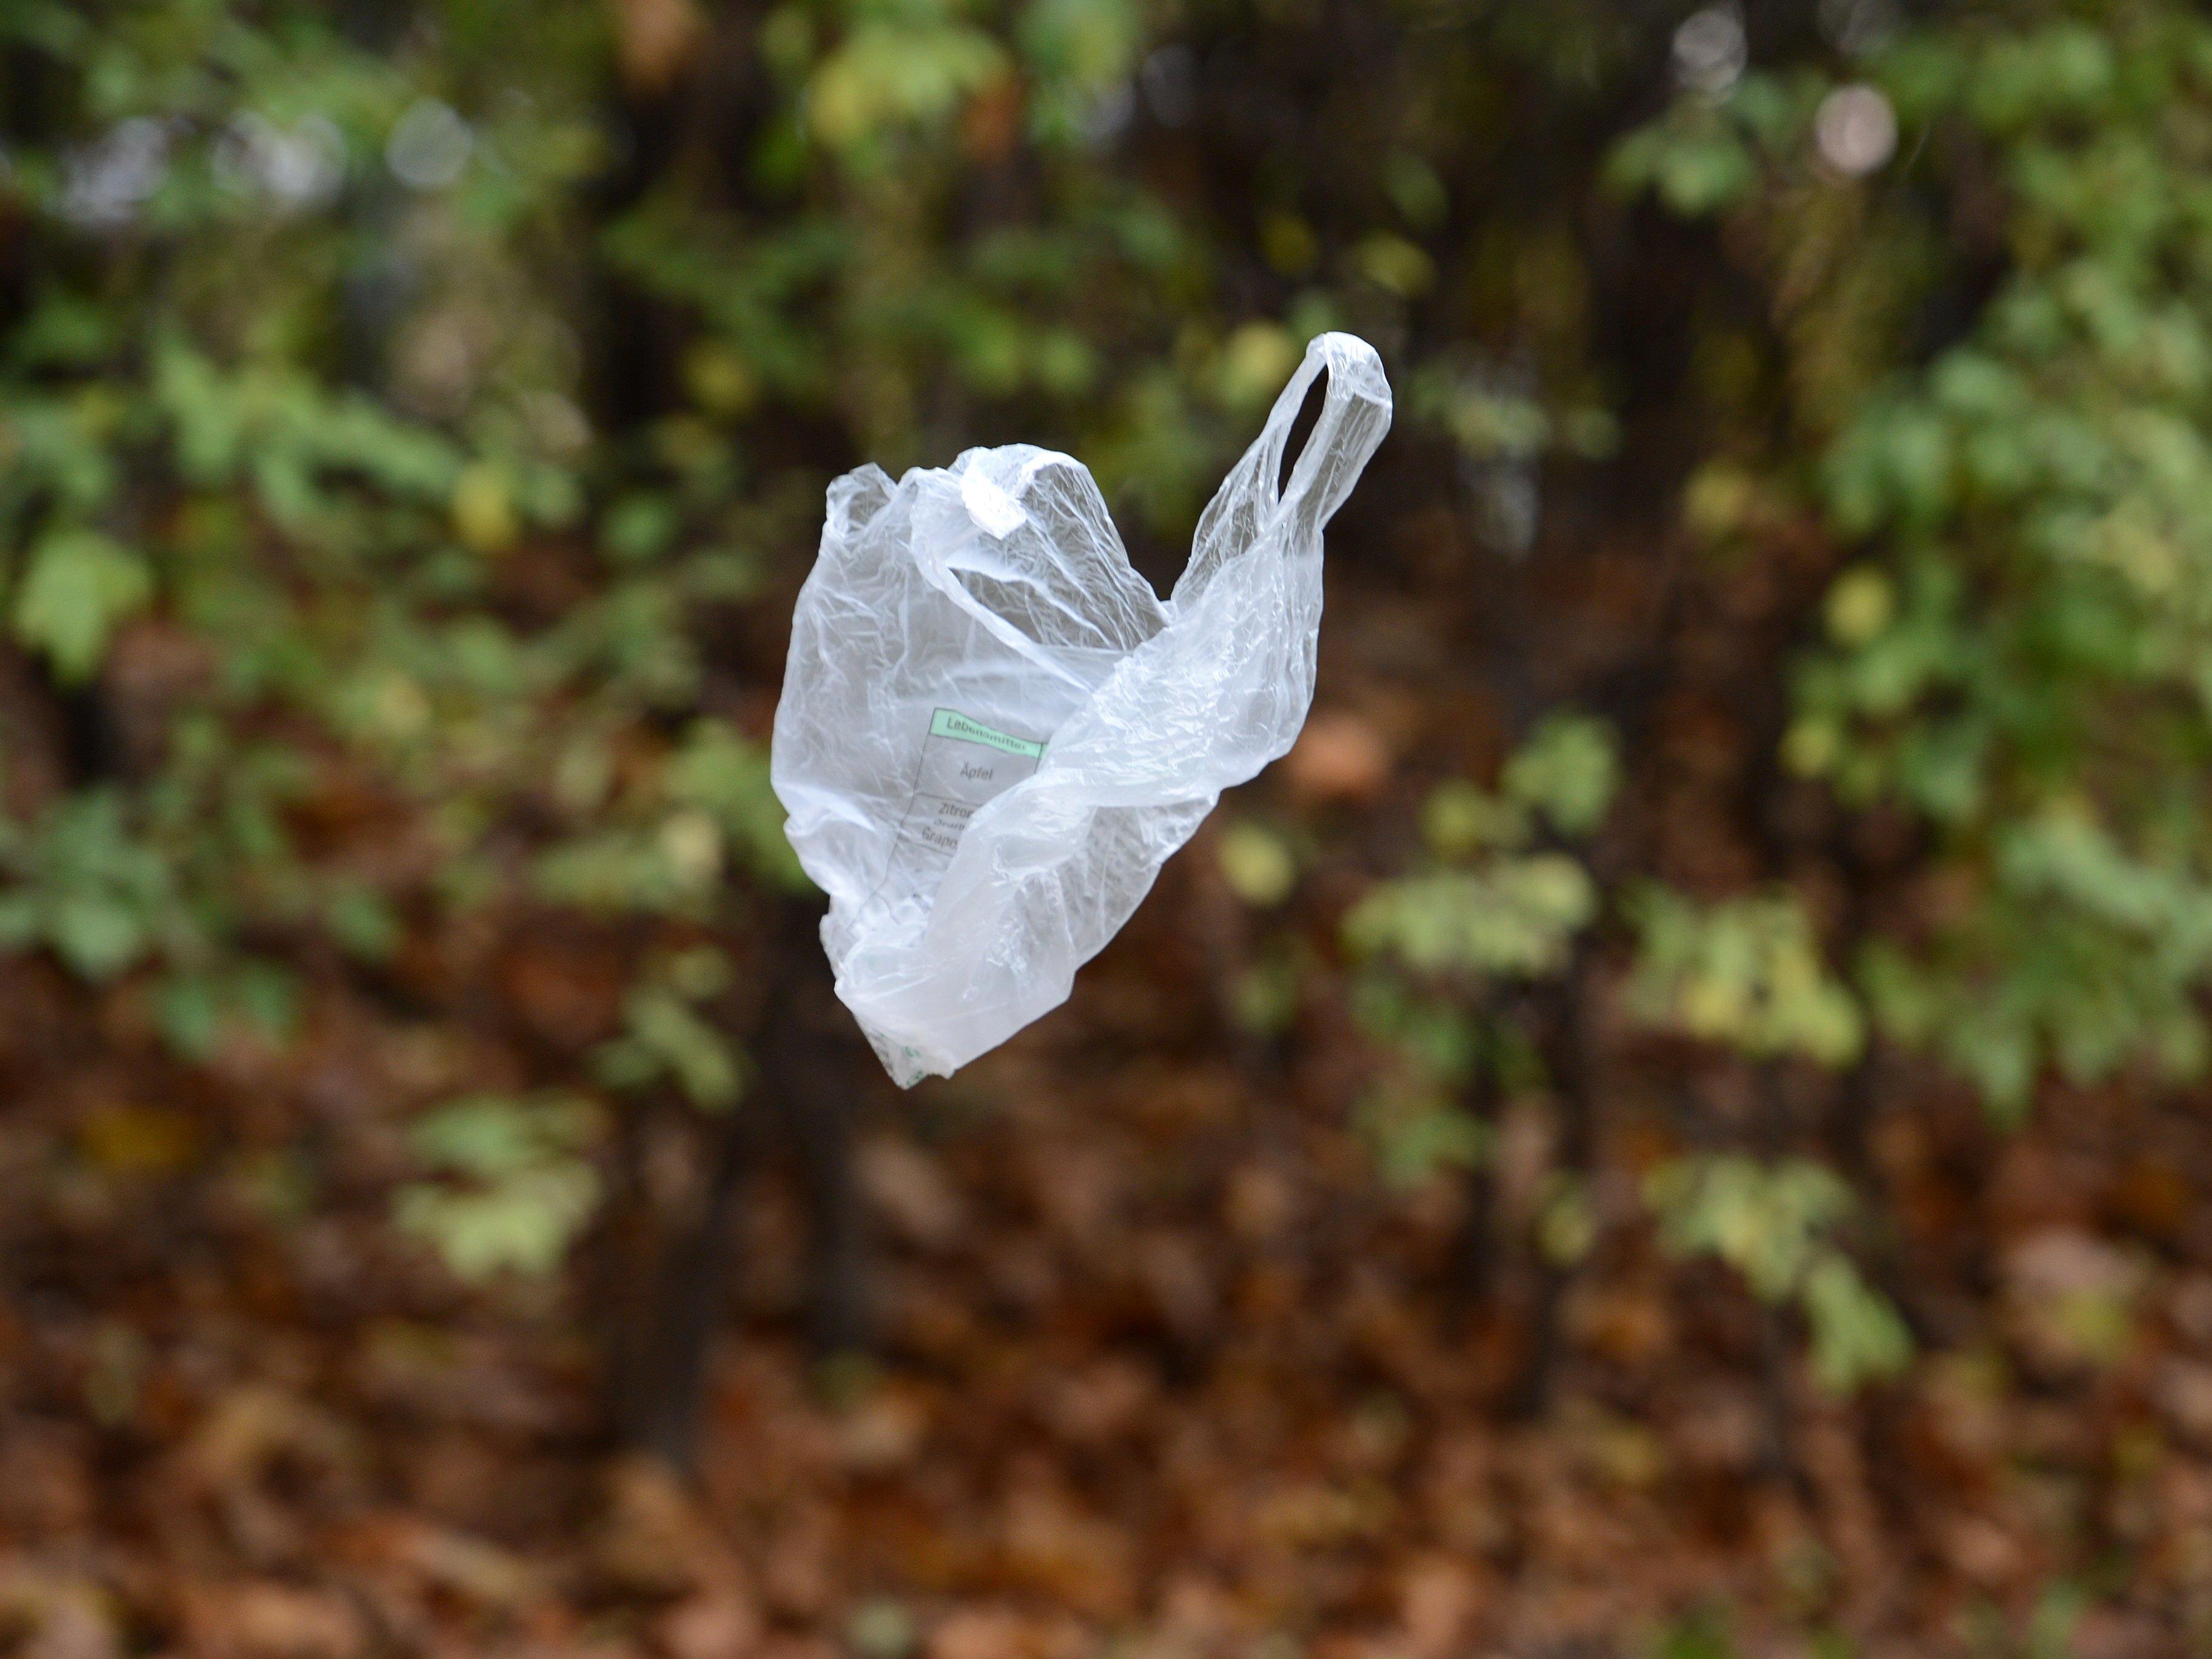 Plastiksackerl sorgen für eine große Belastung der Umwelt.